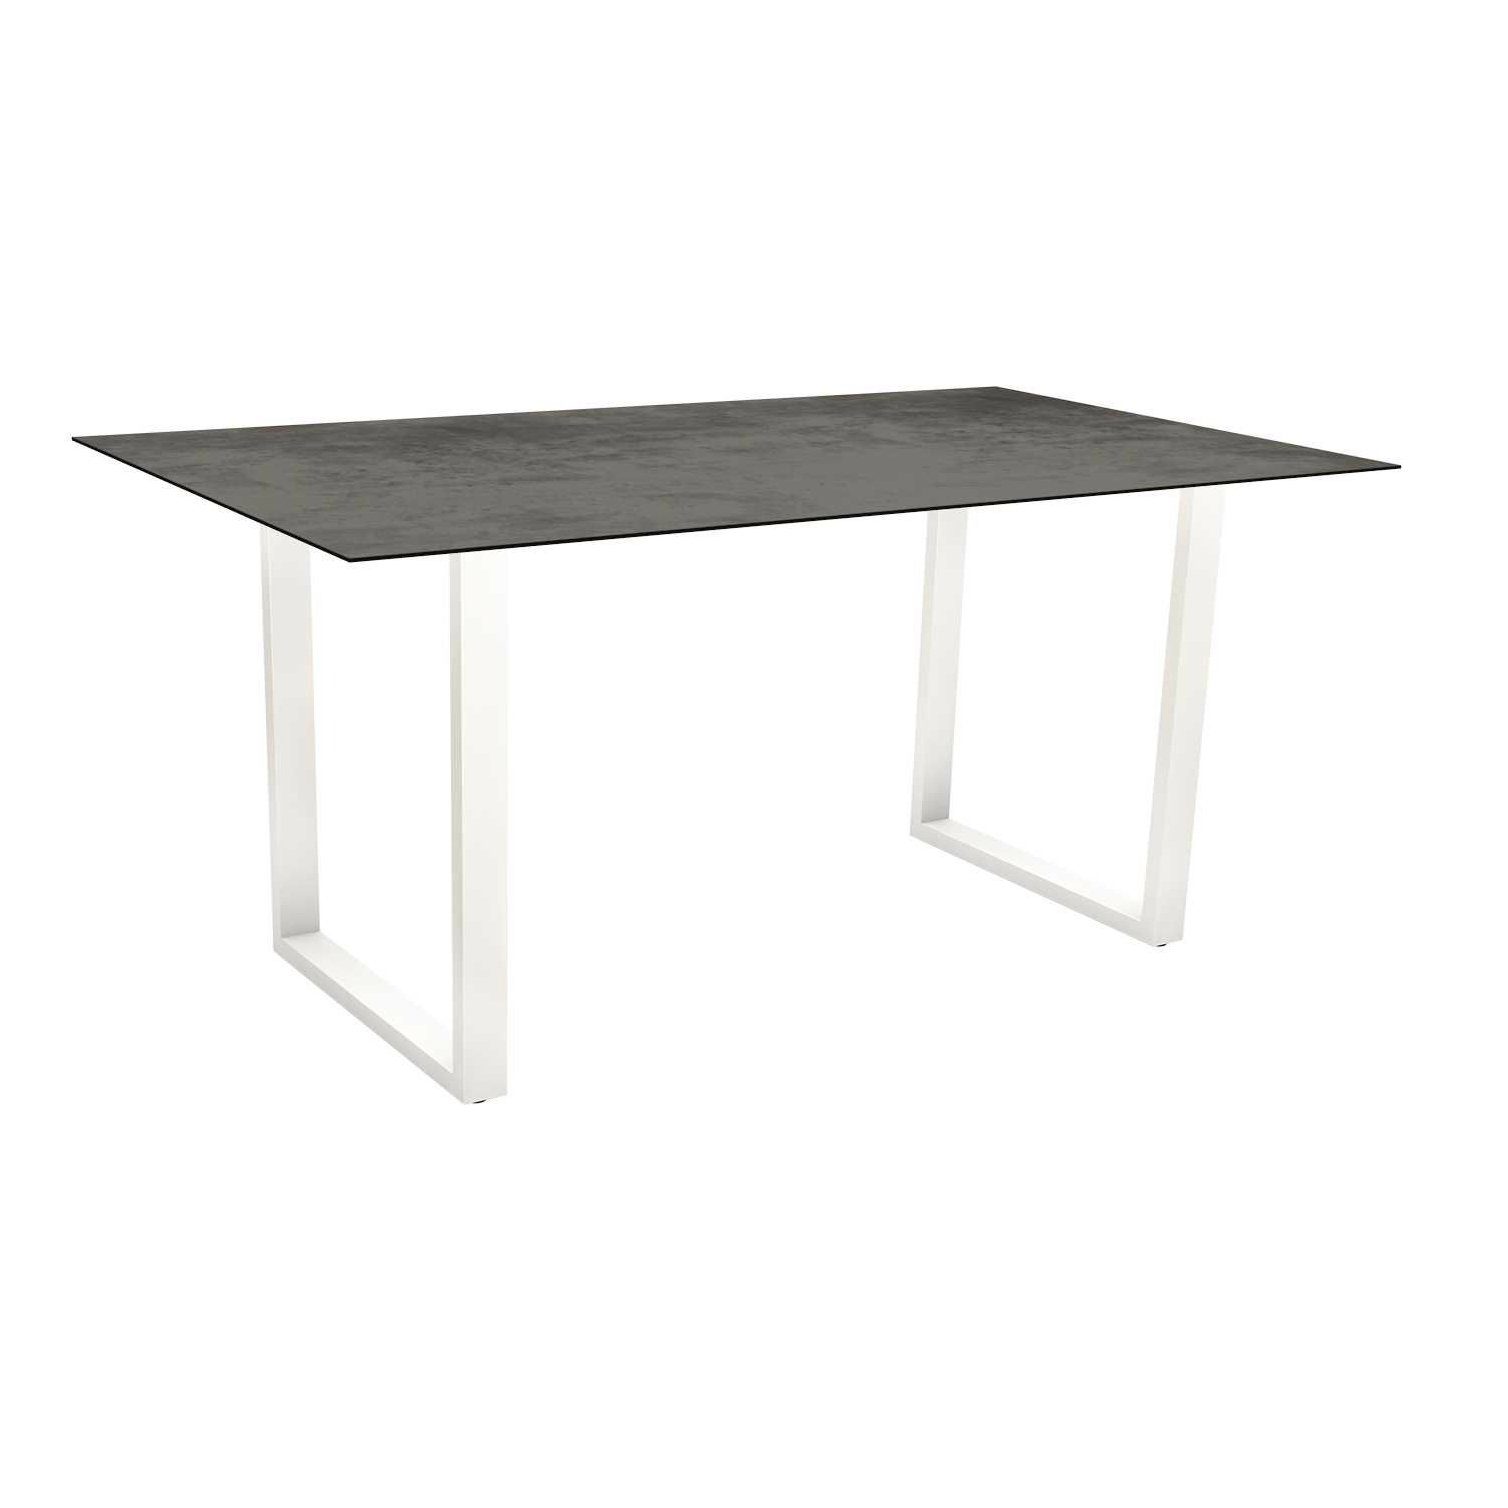 Stern Kufentisch, Gestell Aluminium weiß, Tischplatte HPL Zement, Tischgröße: 160x90 cm